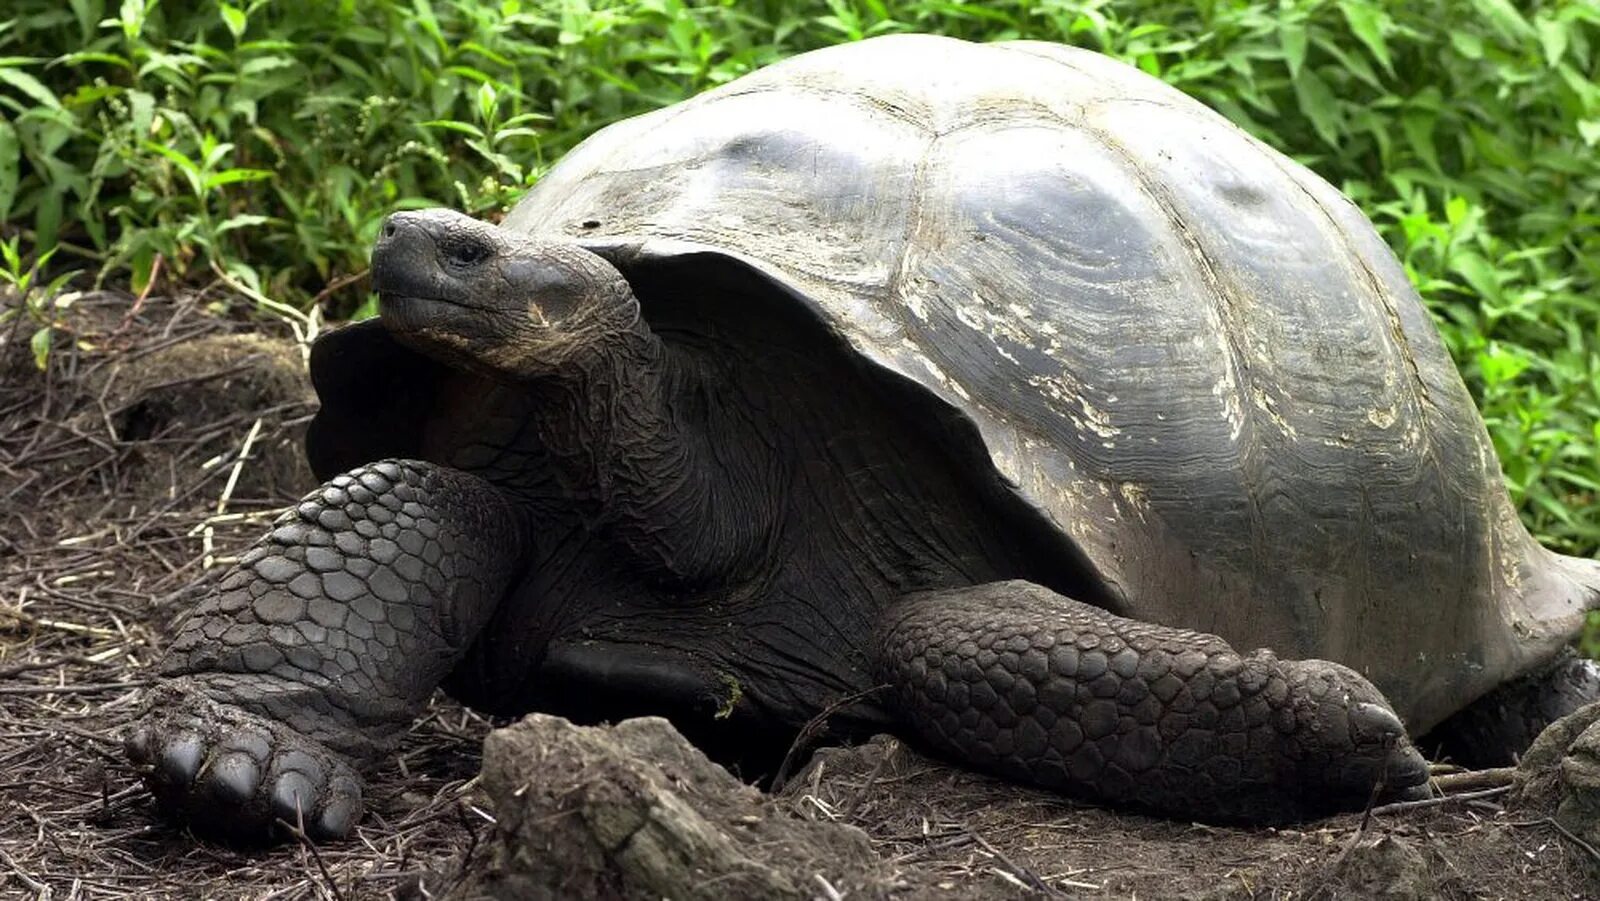 Слоновая черепаха относится к отряду. Галапагосская черепаха. Галапагосская слоновая черепаха. Галапагосские острова черепахи. Галапагосская гигантская черепаха вымерла.